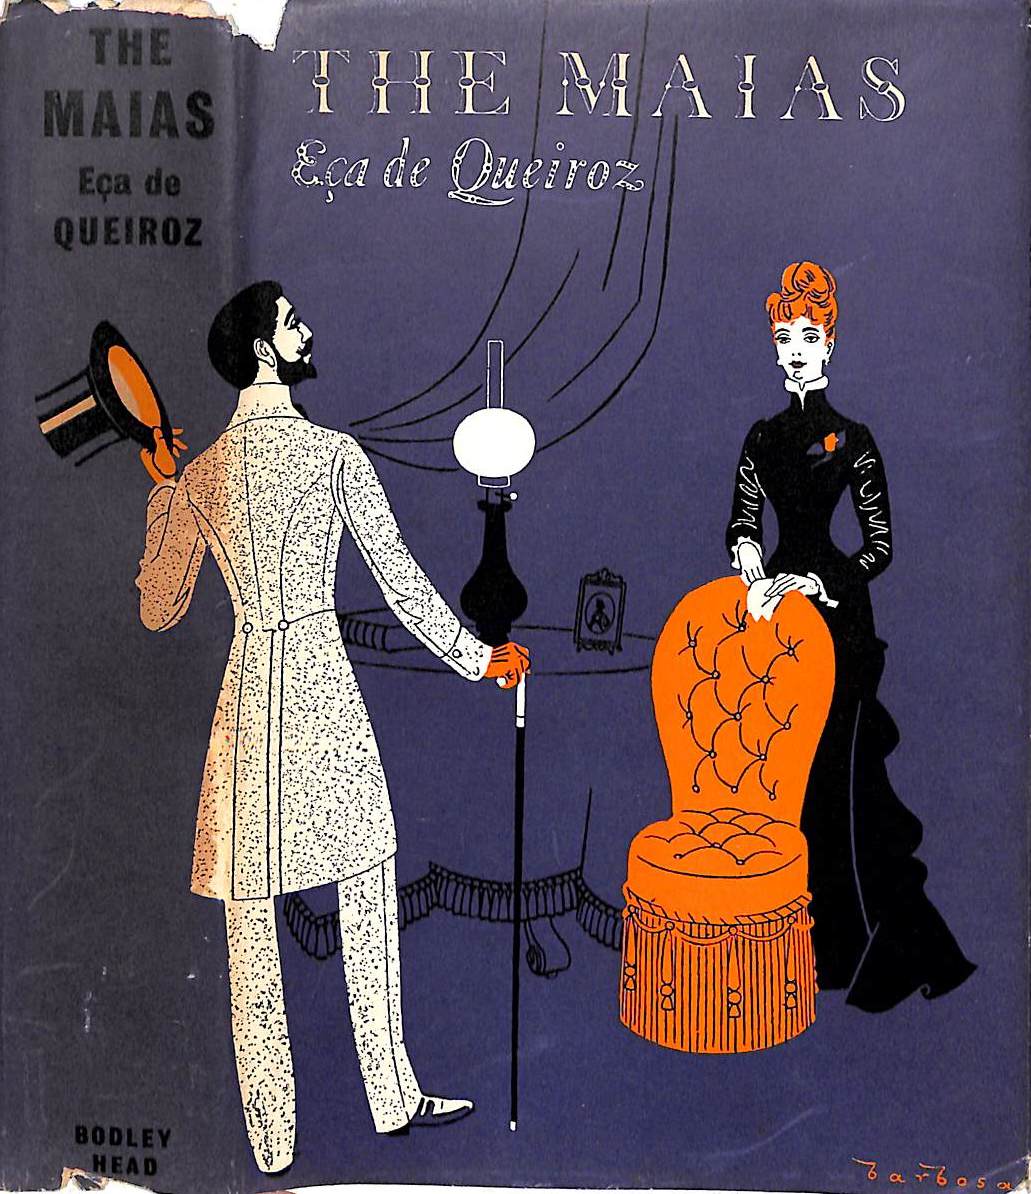 "The Maias" 1965 QUEIROZ, Eca de